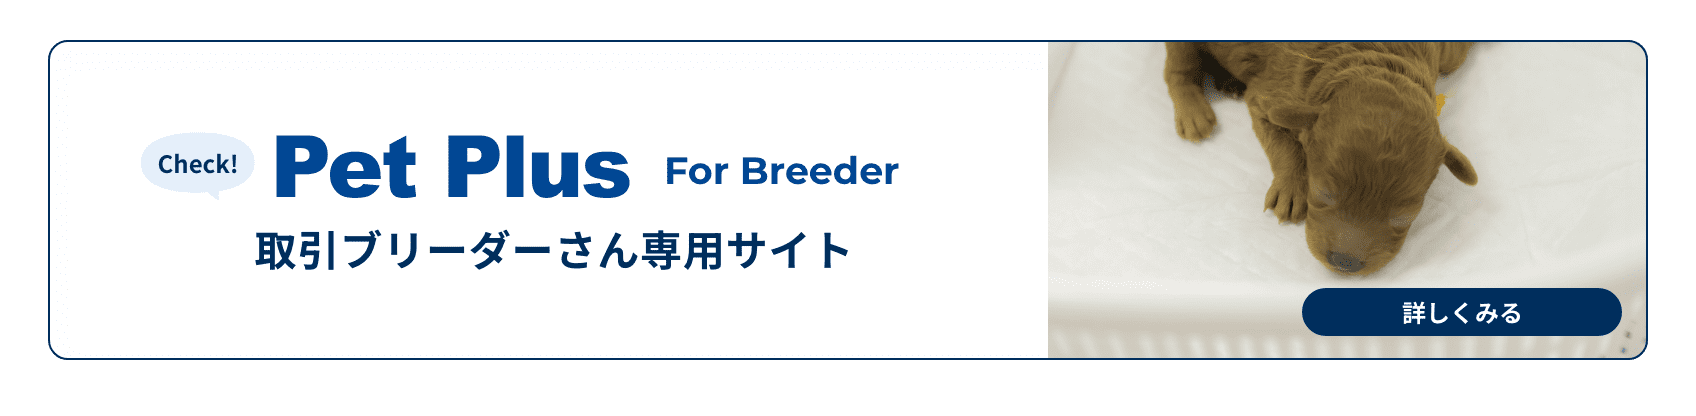 Pet Plus For Breeder